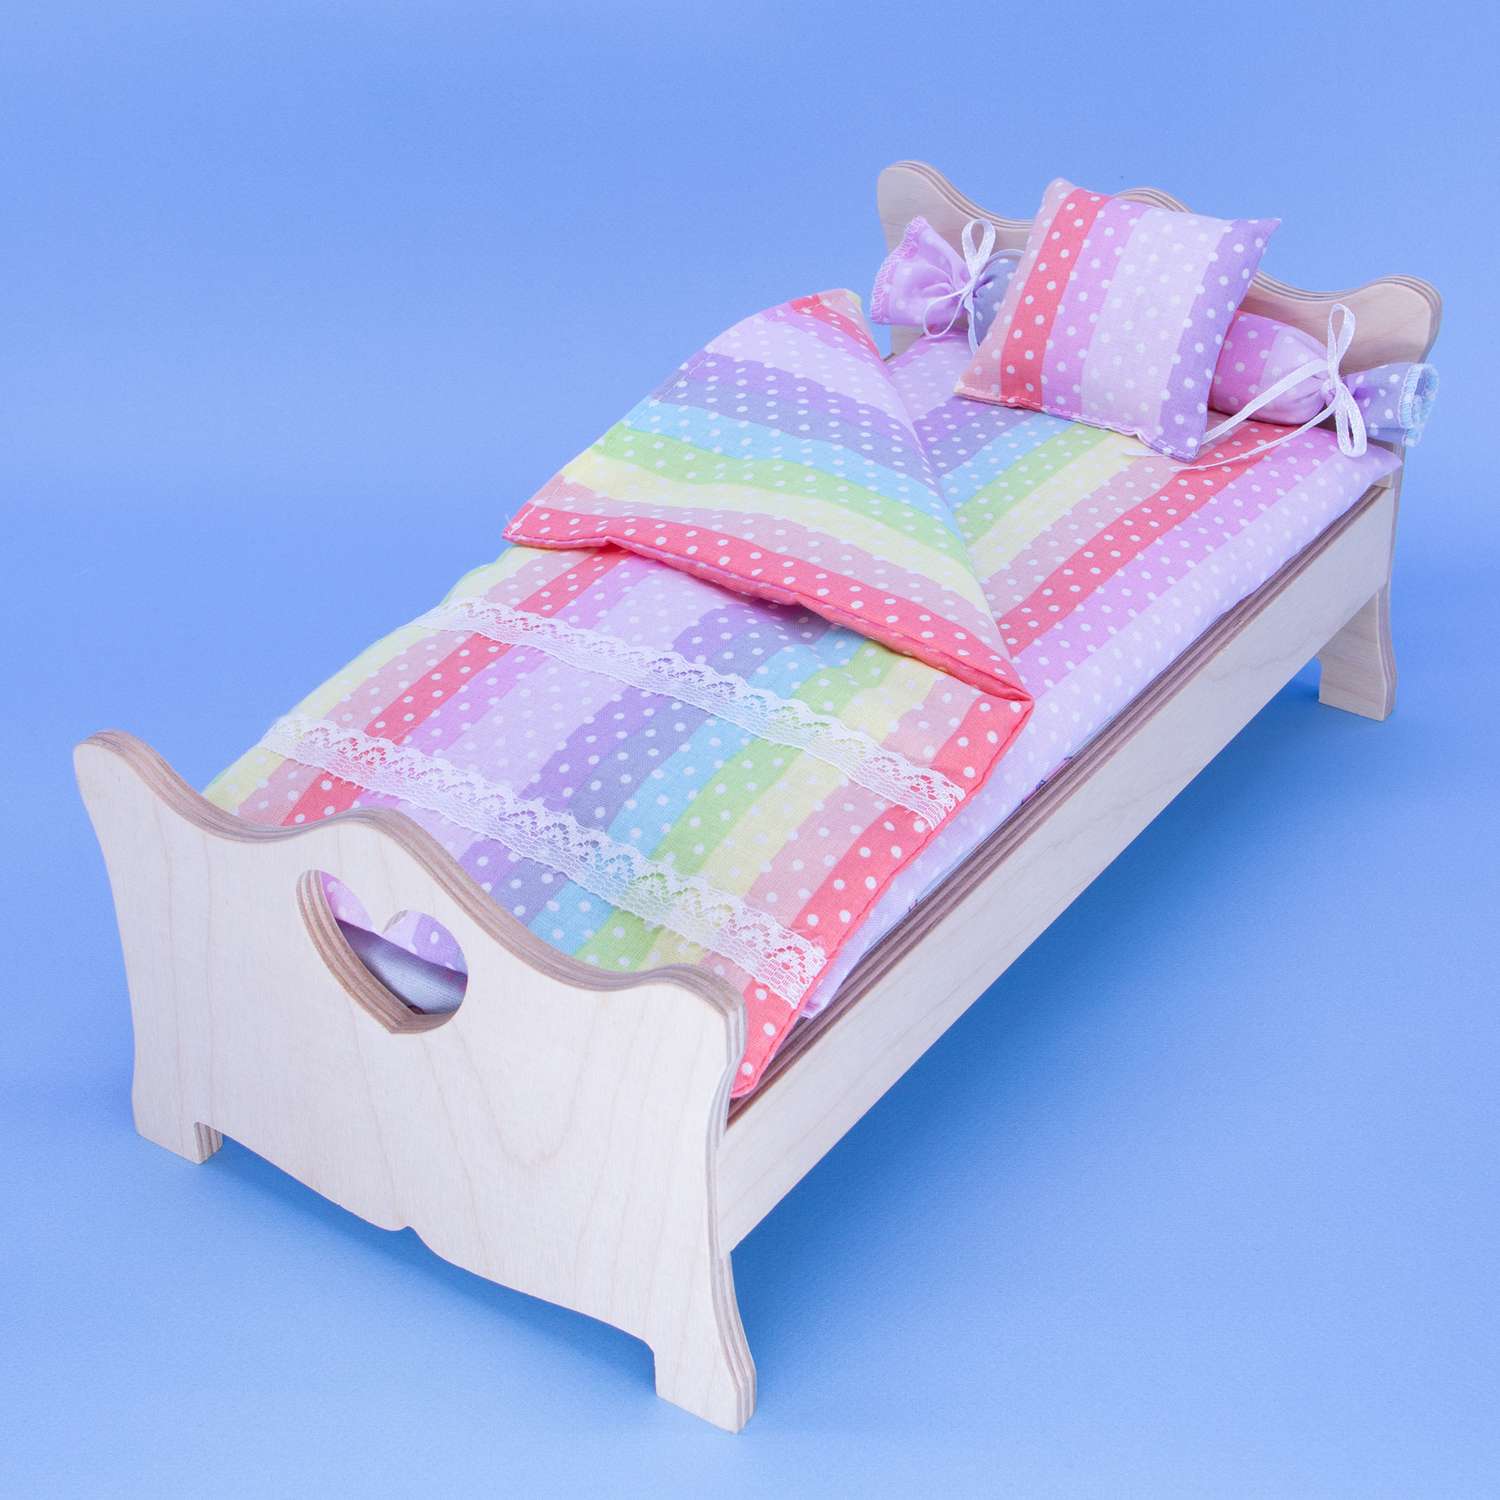 Комлпект постельного белья Модница для куклы 29 см 2002 разноцветный 2002разноцветный - фото 10